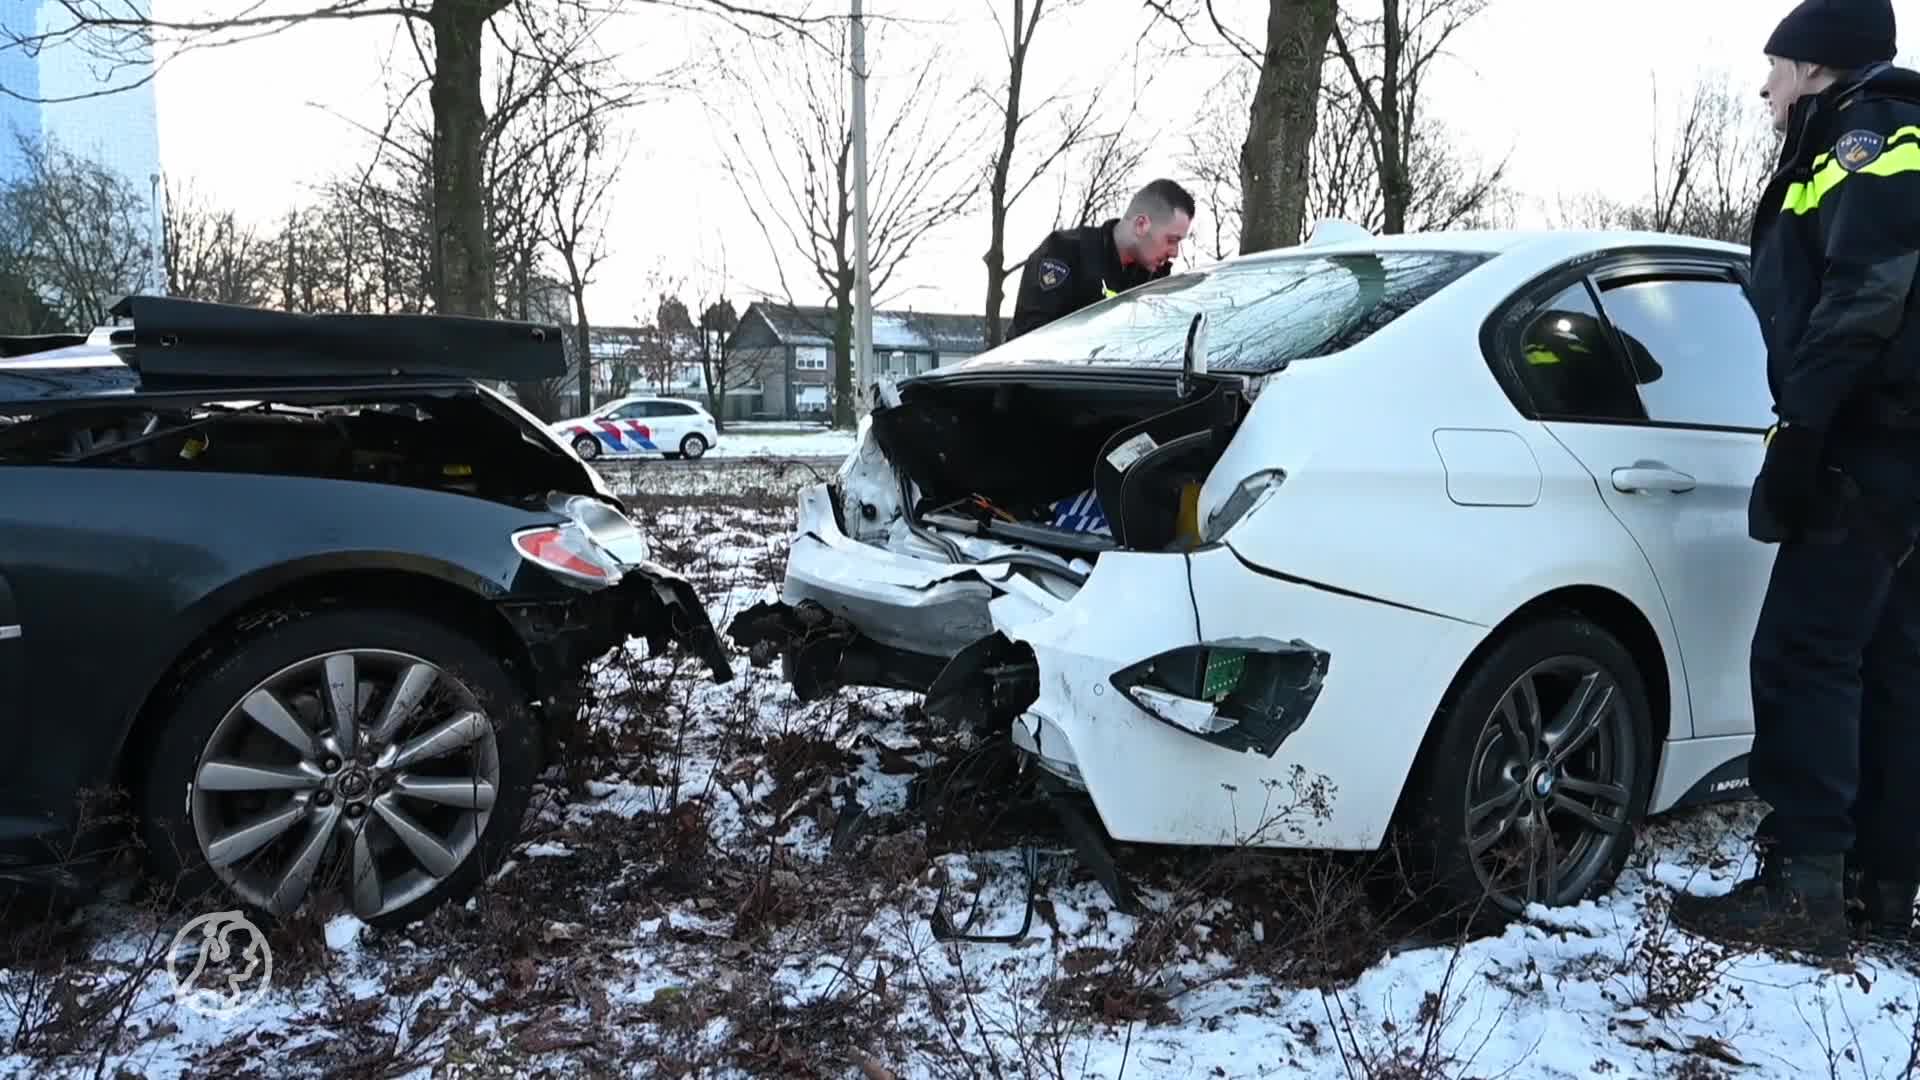 Meerdere gewonden na ongeluk op rotonde in Tilburg